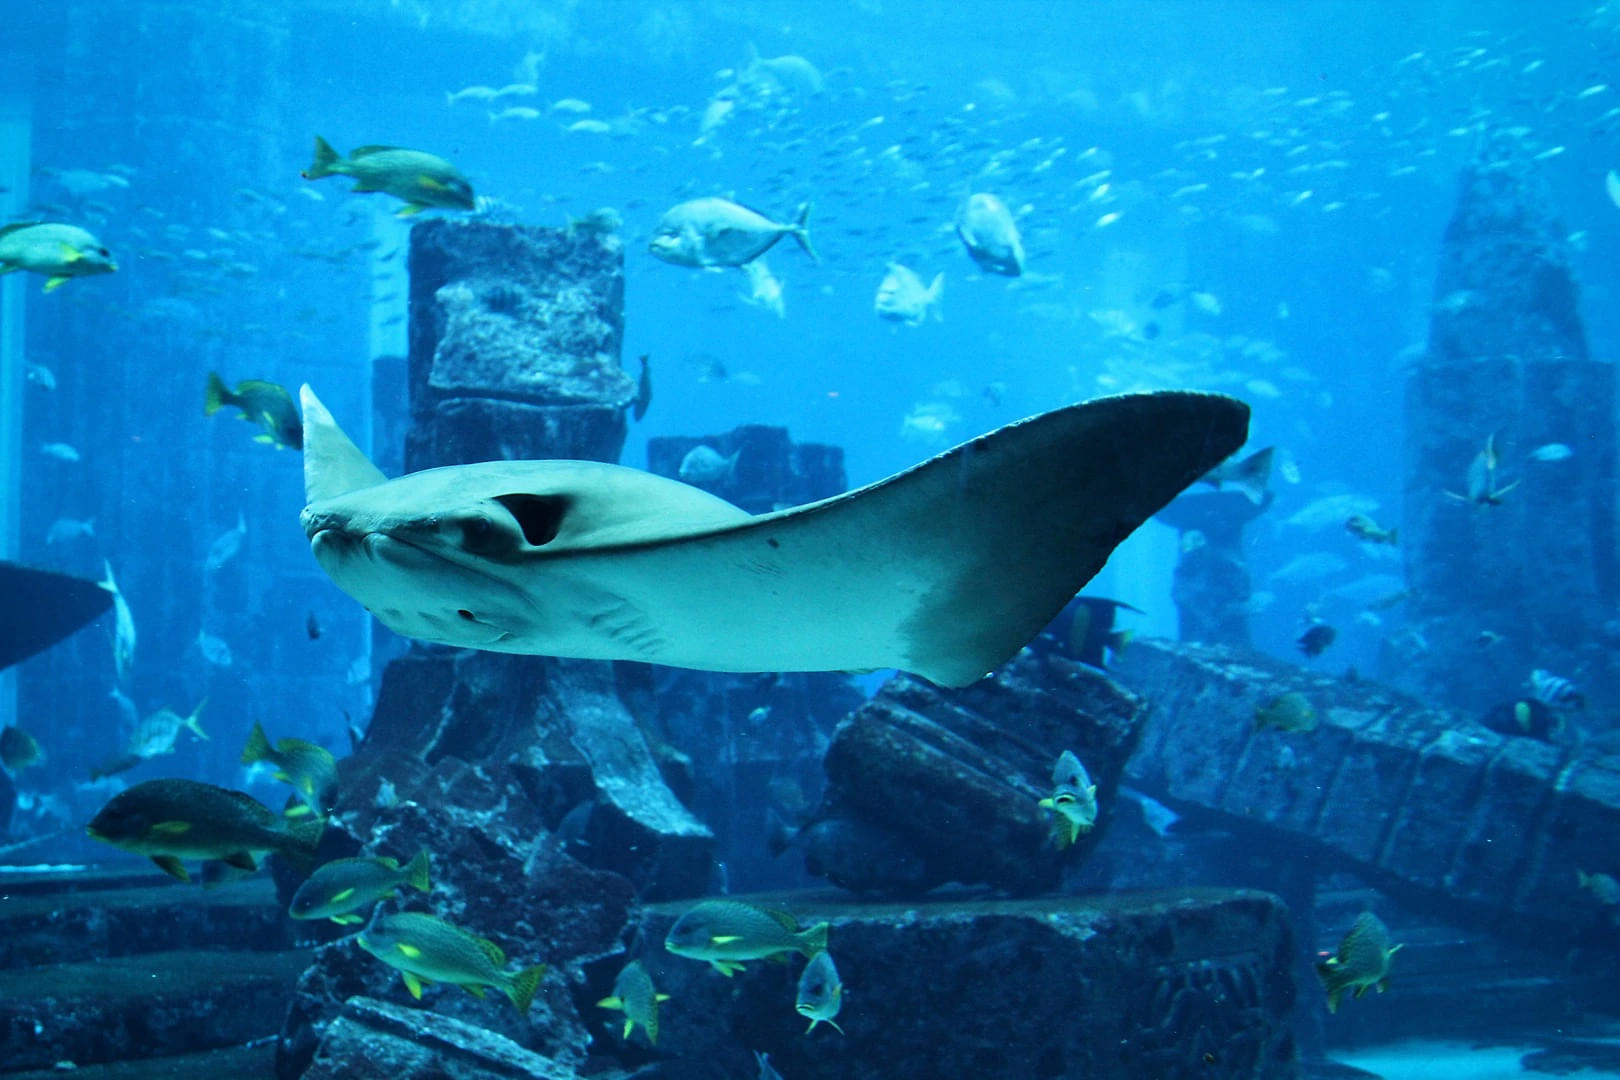 The Aquarium at the Burj Al Arab